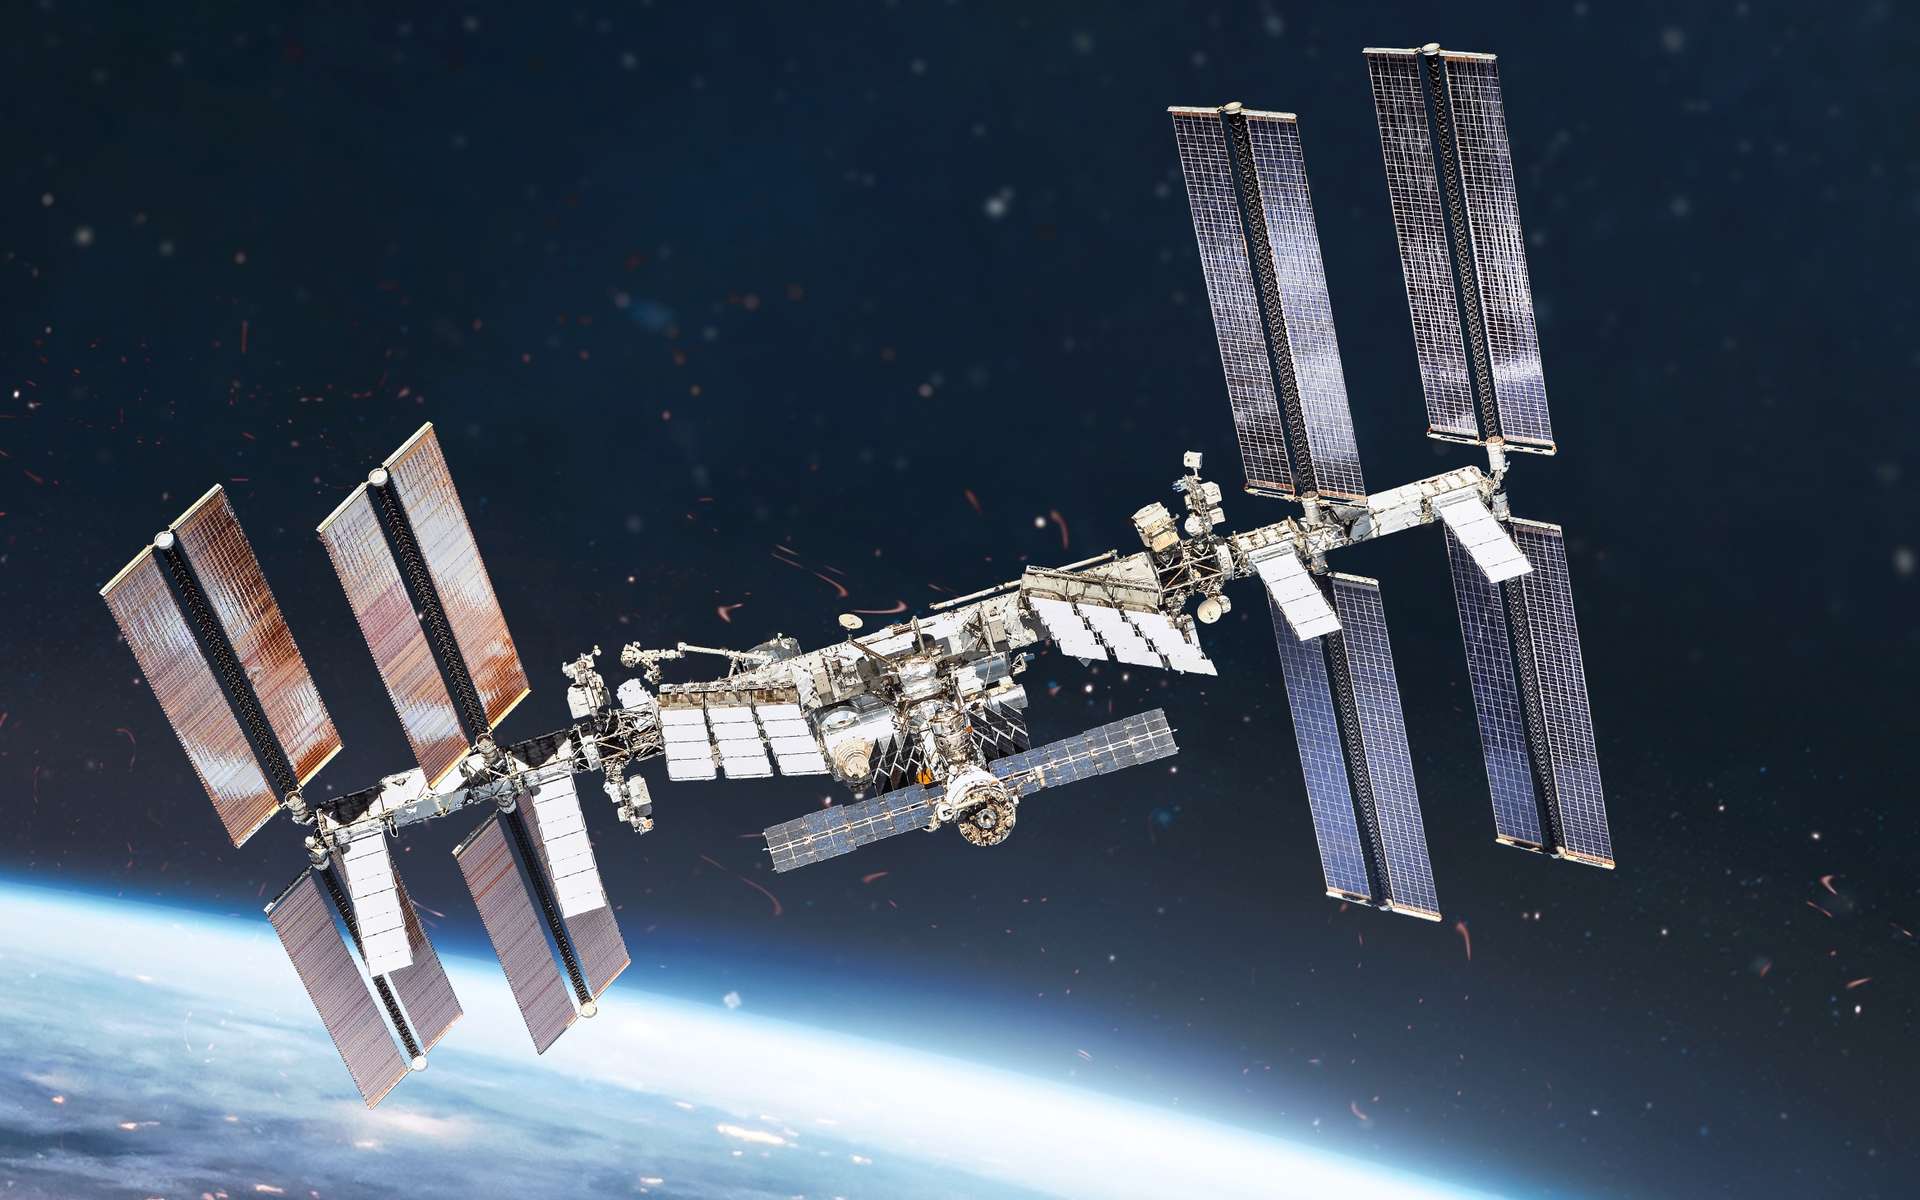 Découvrez les coulisses de la Station spatiale internationale dont l'aventure a commencé il y a 25 ans !